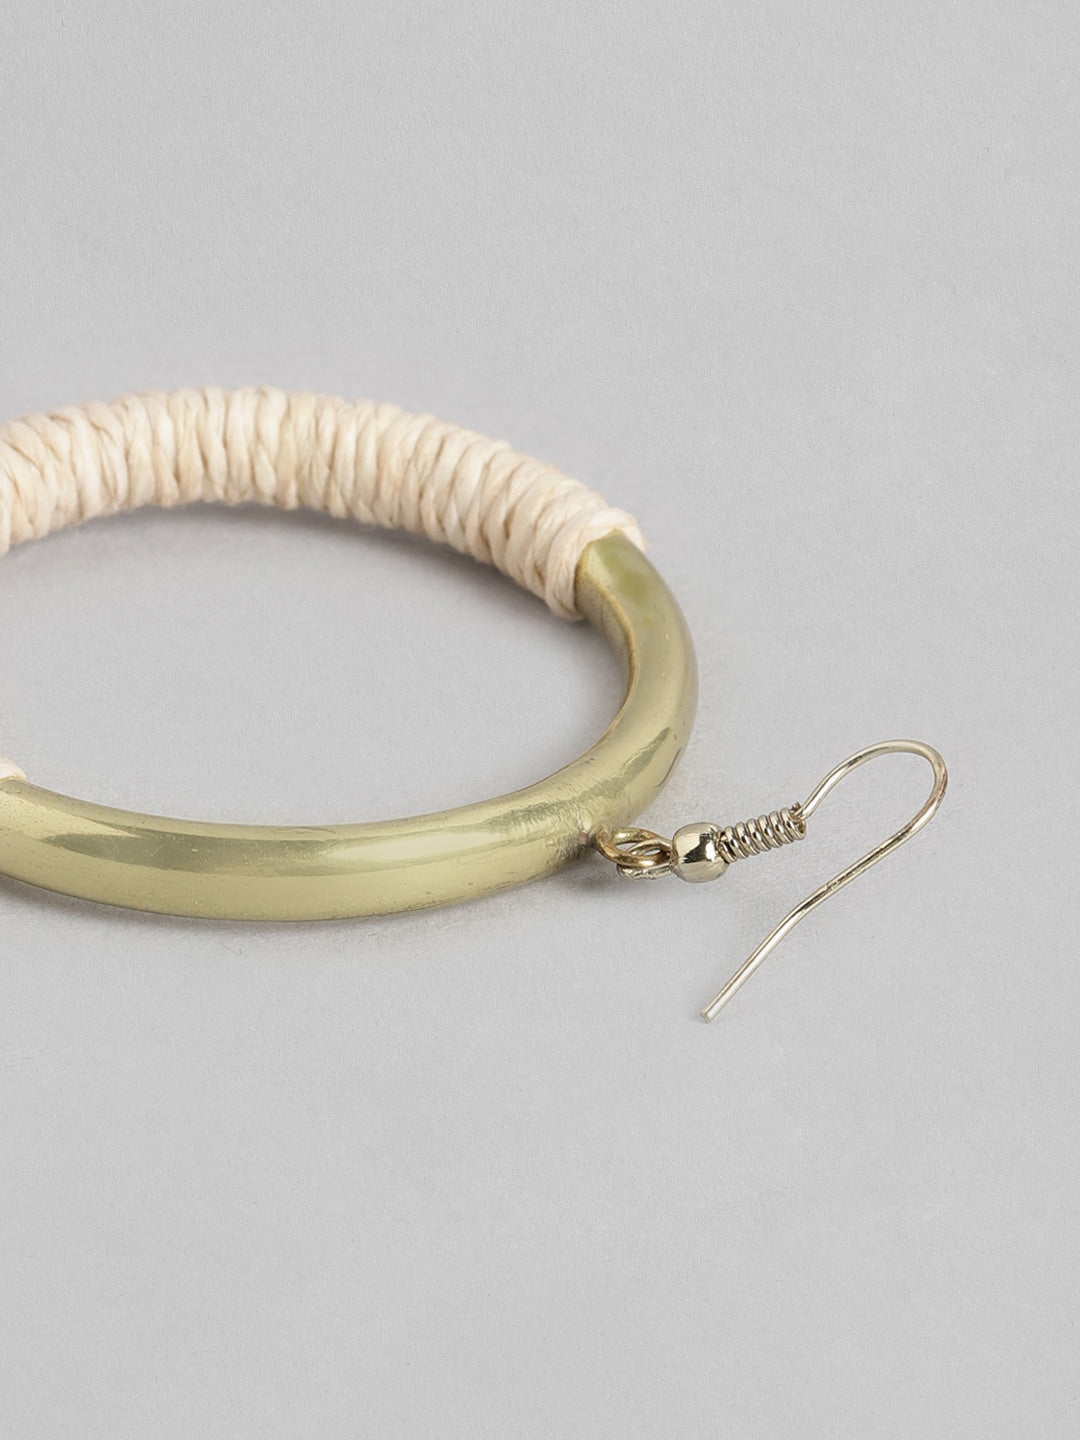 Beige & Gold-Toned Circular Beaded Hoop Earrings